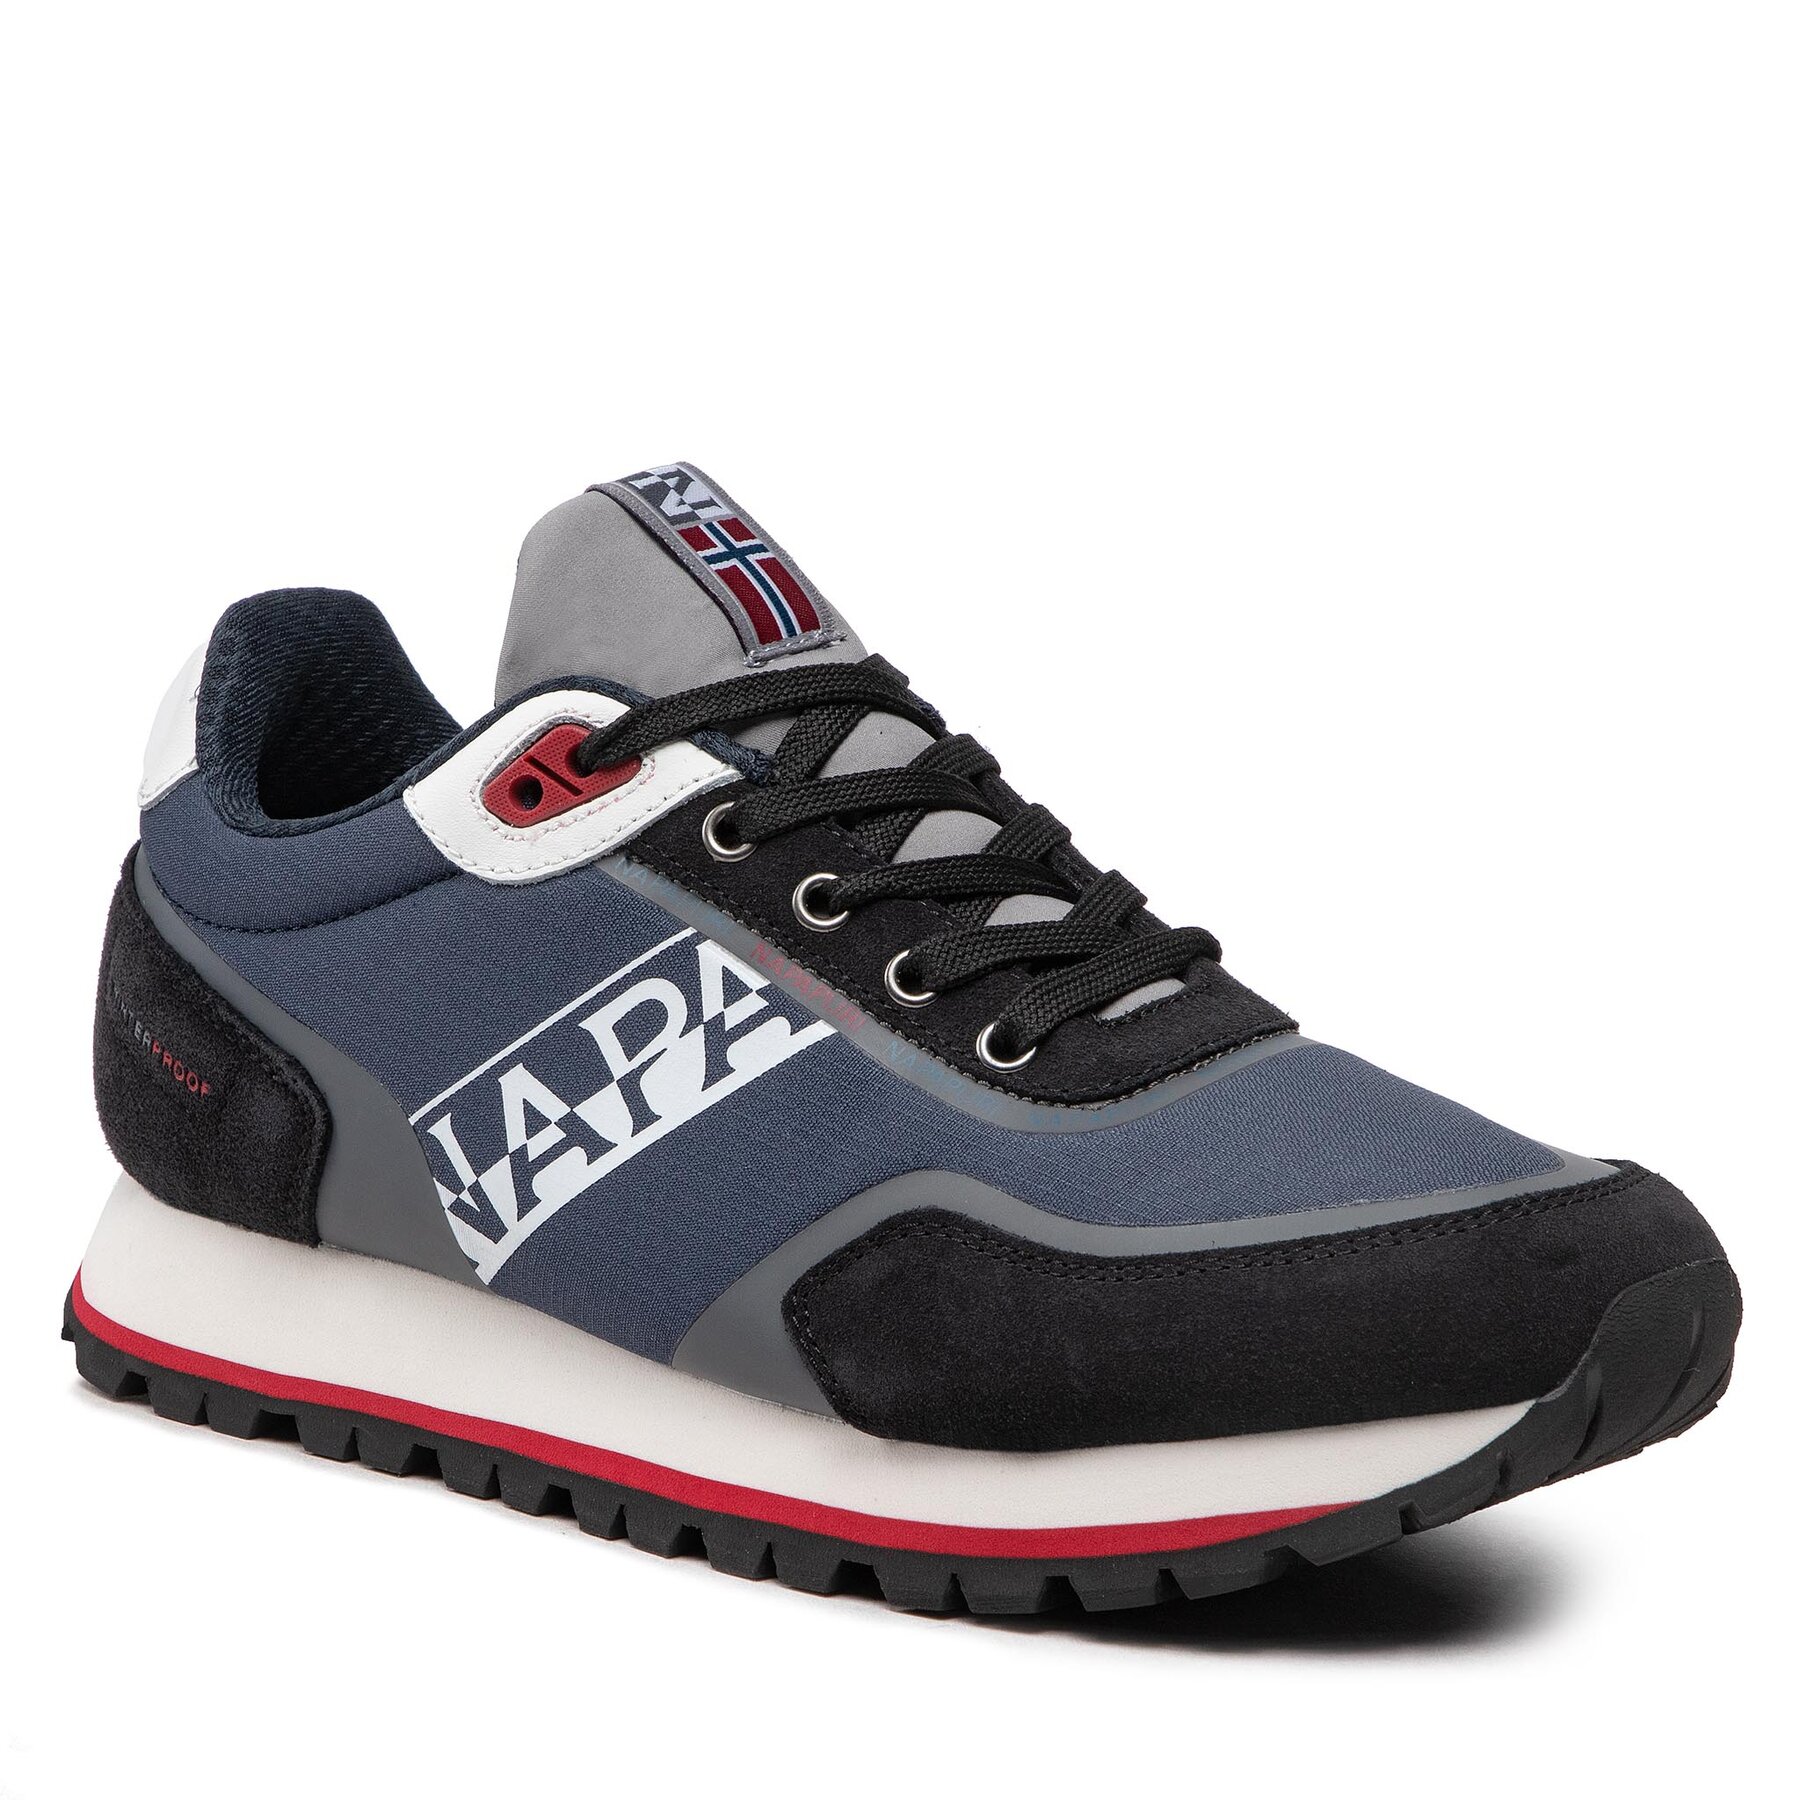 Sneakers Napapijri Lotus NP0A4H6T0 Navy/Grey 1Y1